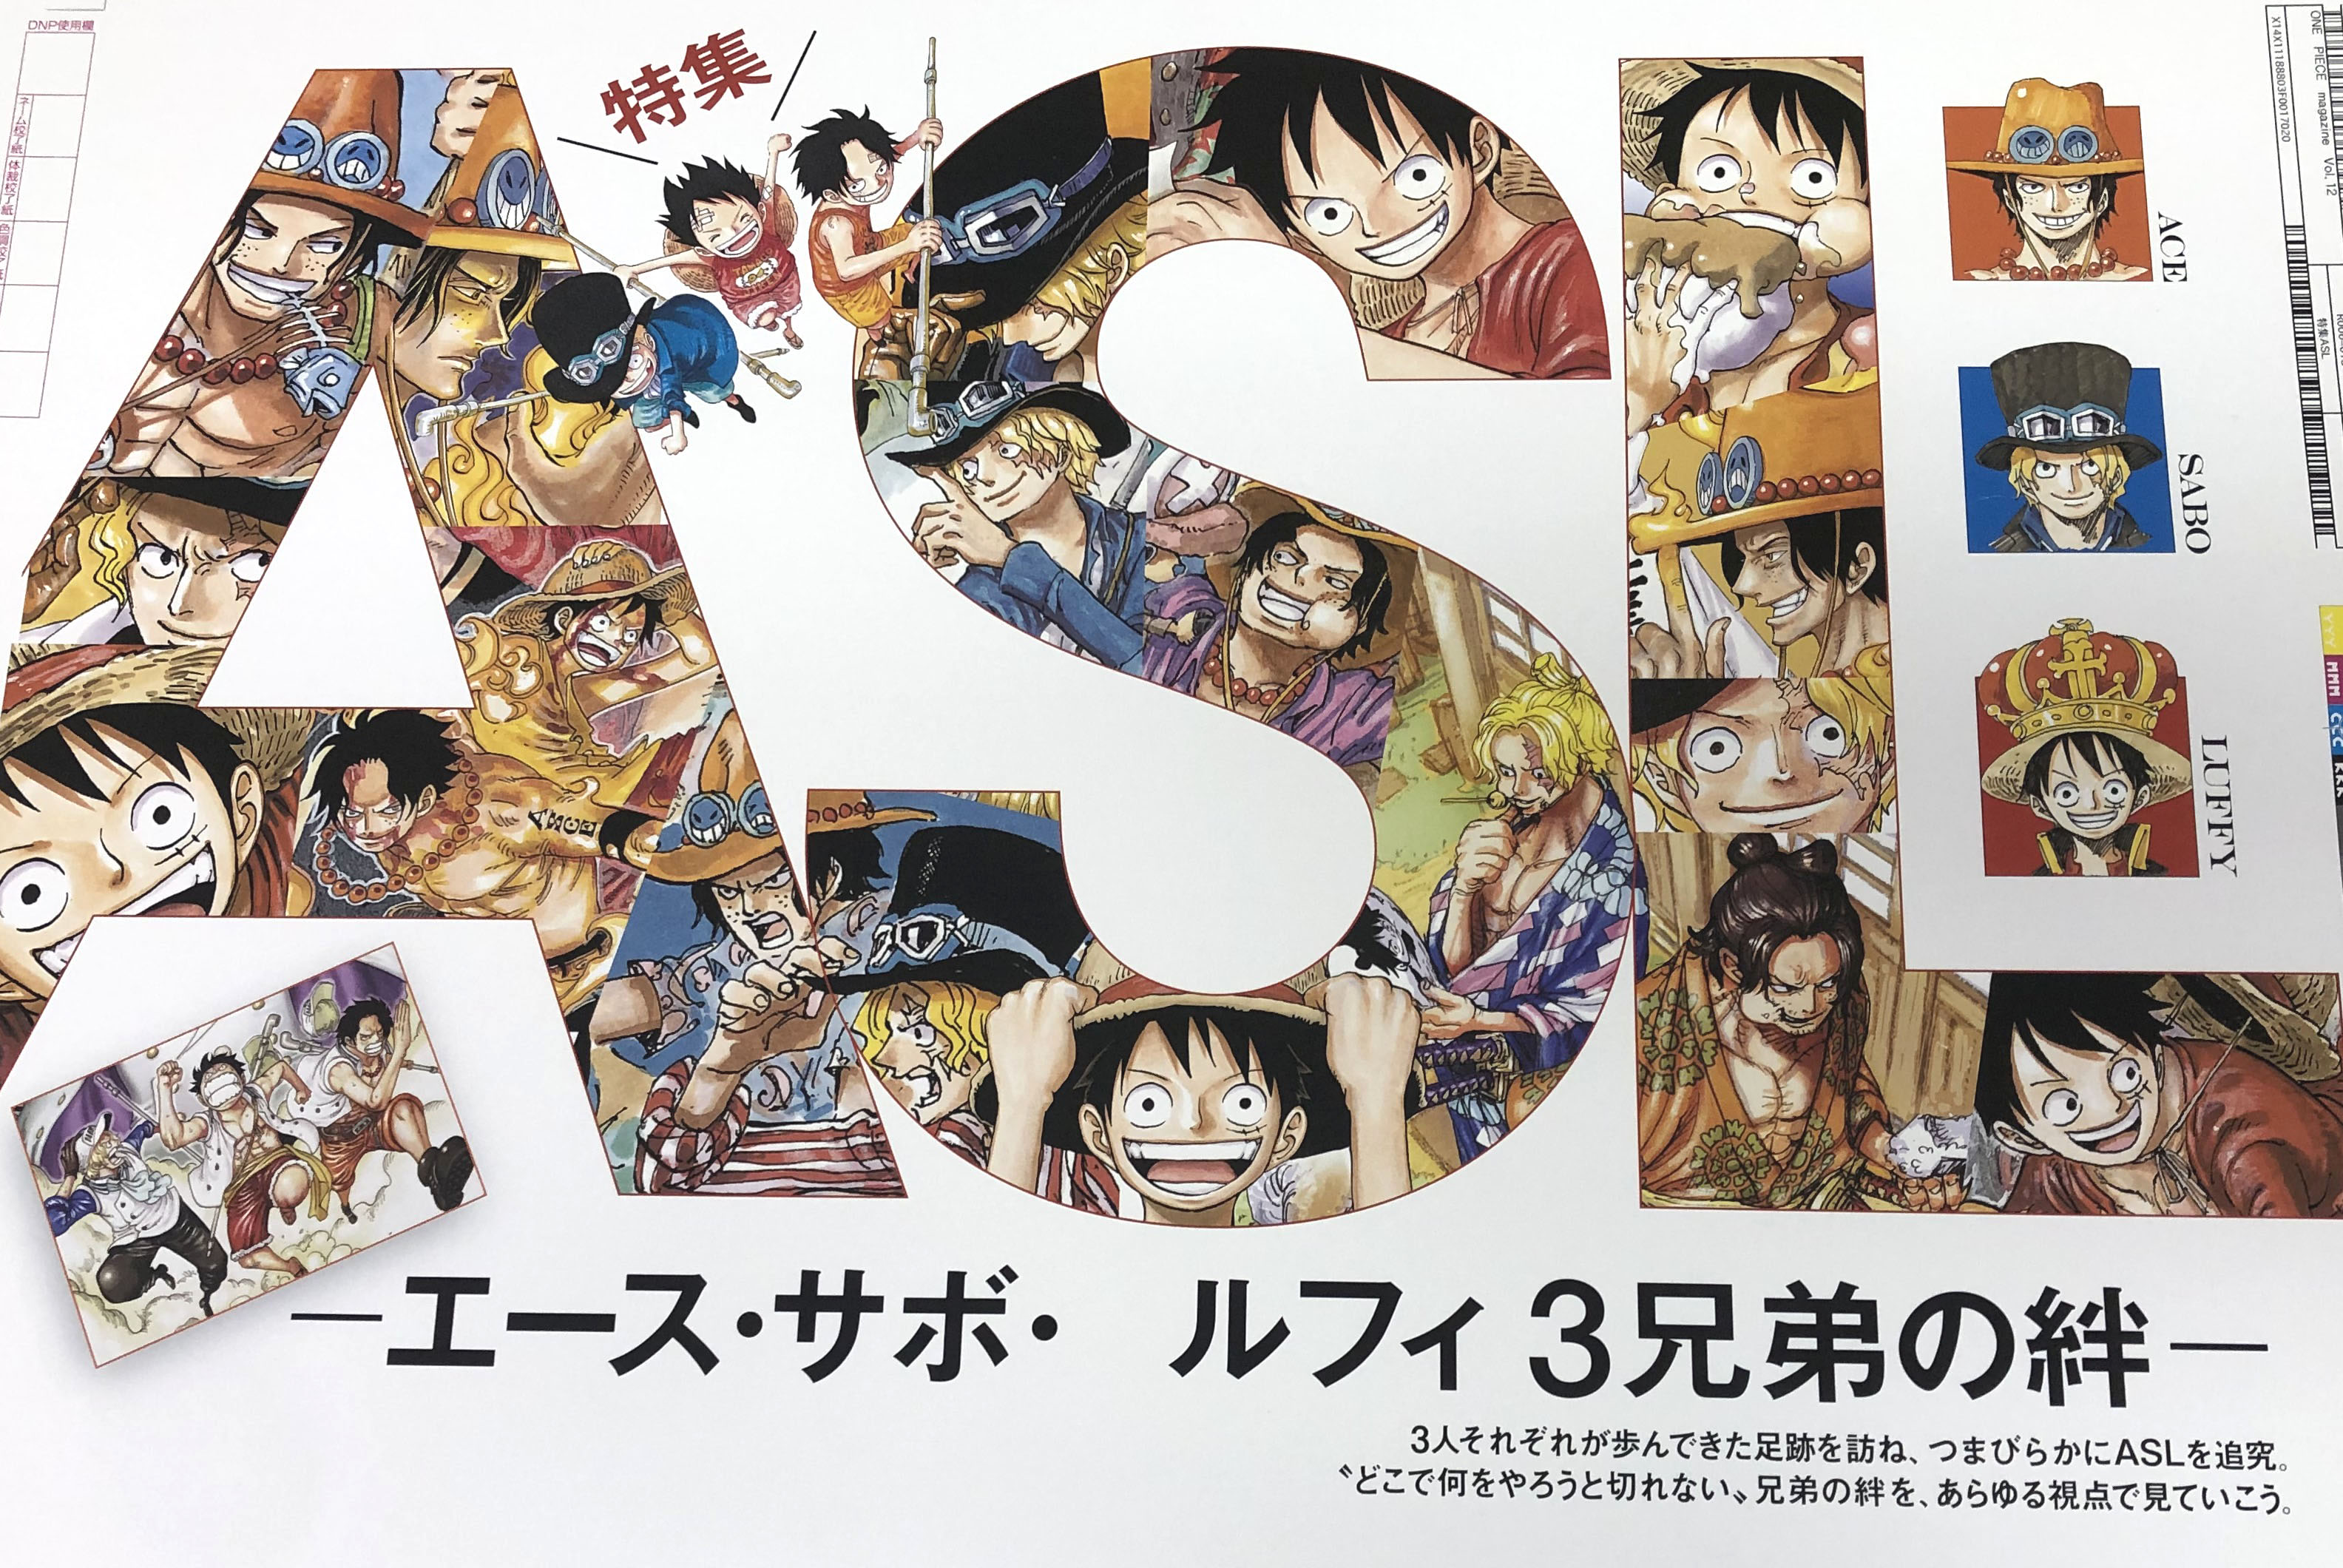 かずは One Piece Love Kazuhaonepiece Twitter